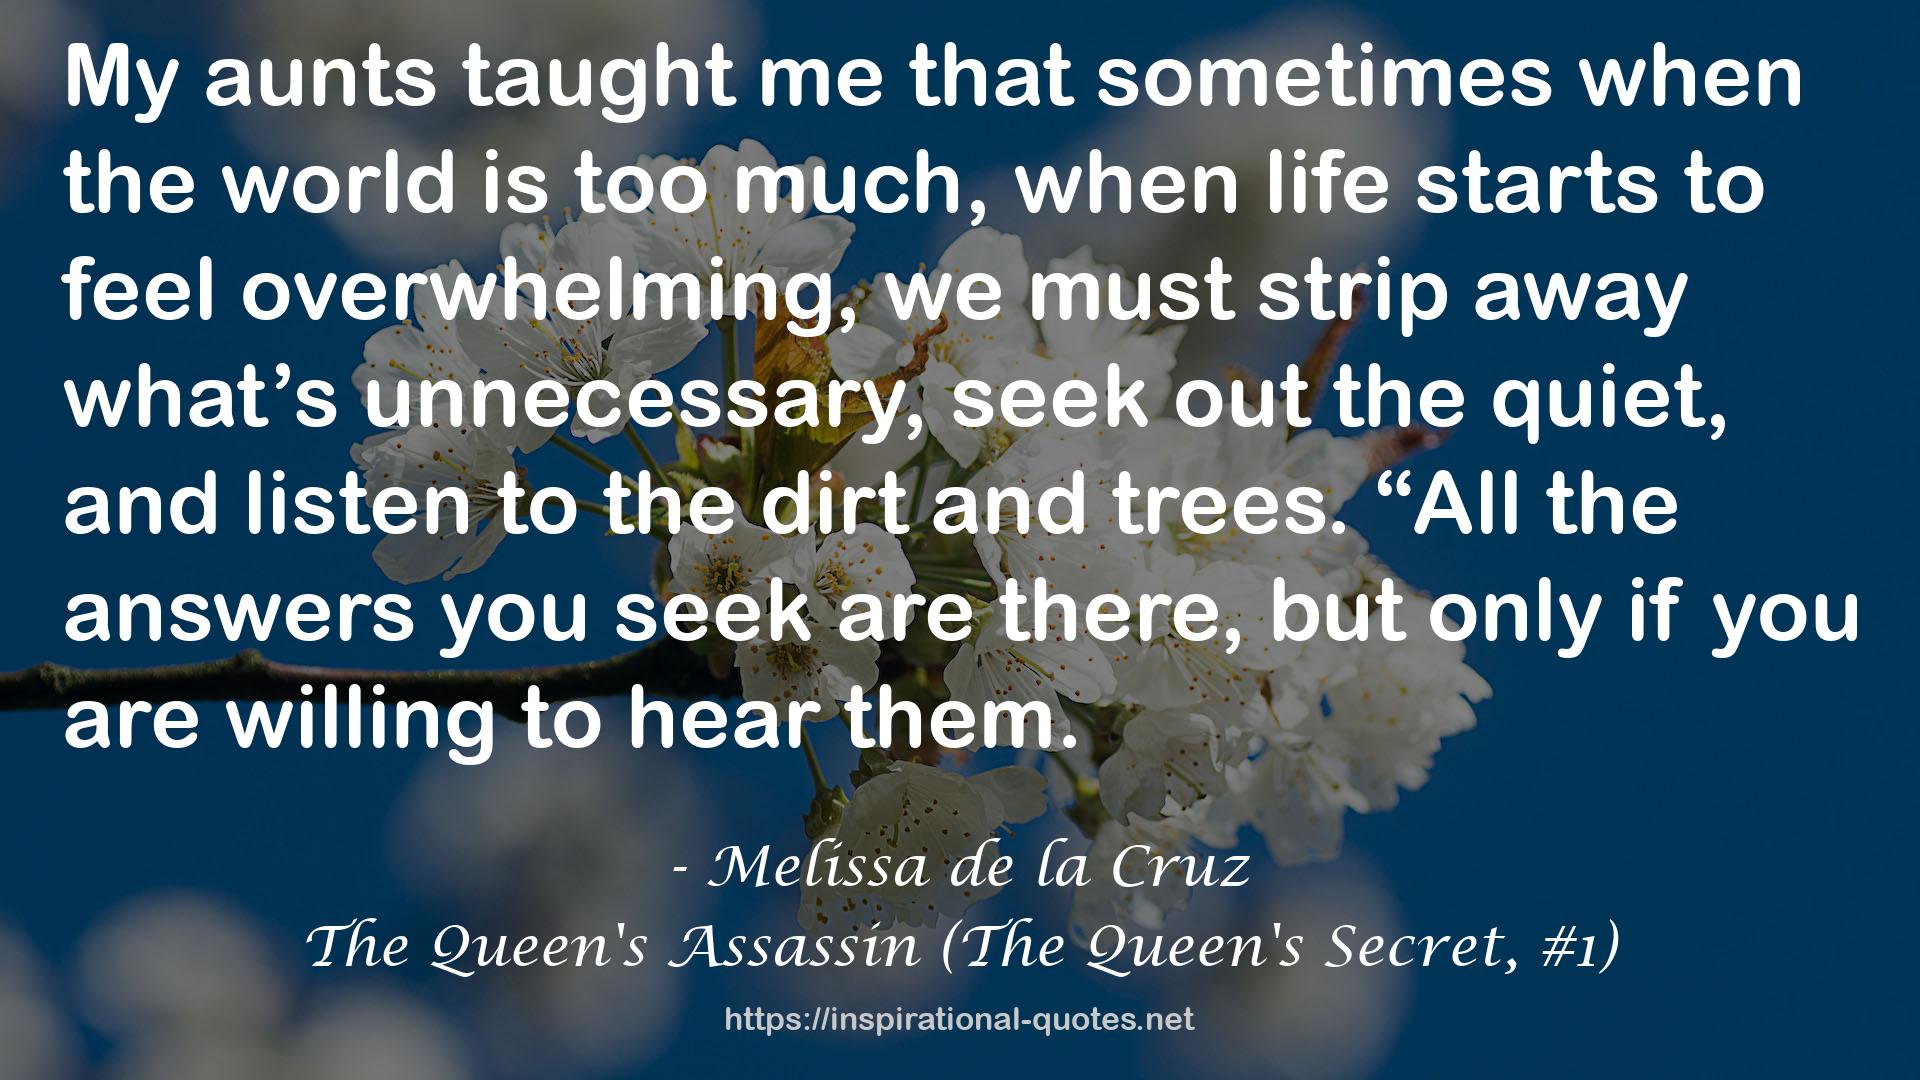 The Queen's Assassin (The Queen's Secret, #1) QUOTES